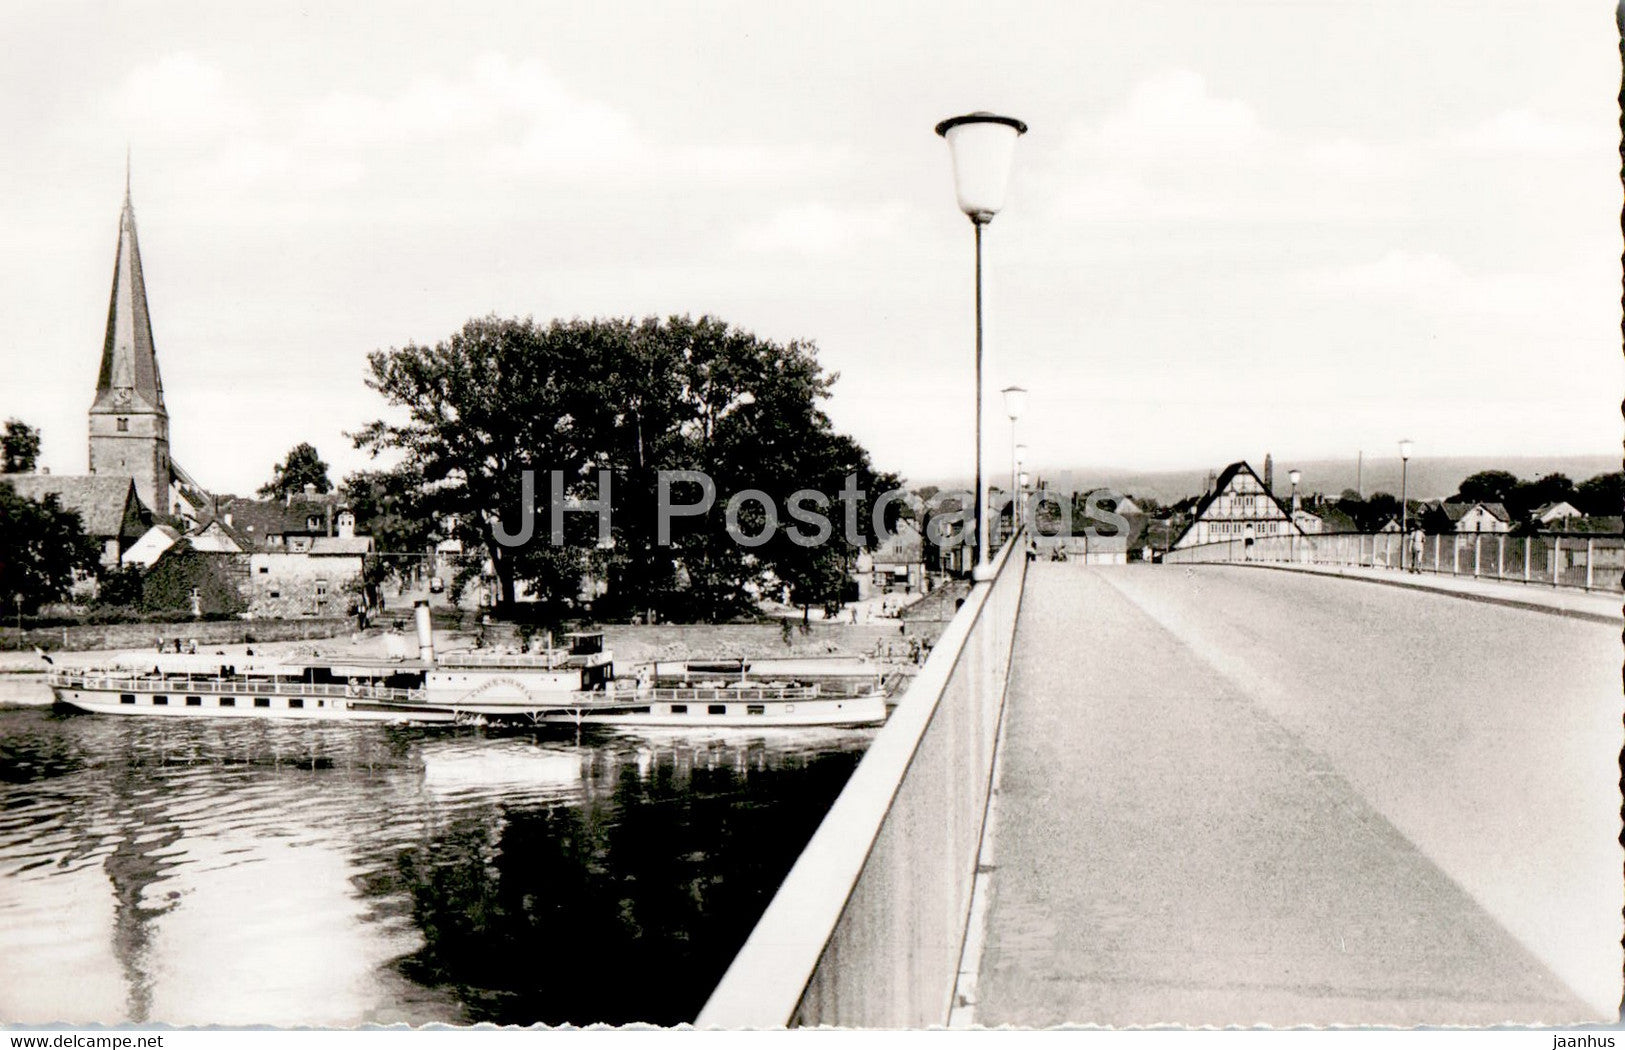 Holzminden - Weserbrucke - ship - steamer - bridge - old postcard - Germany - used - JH Postcards